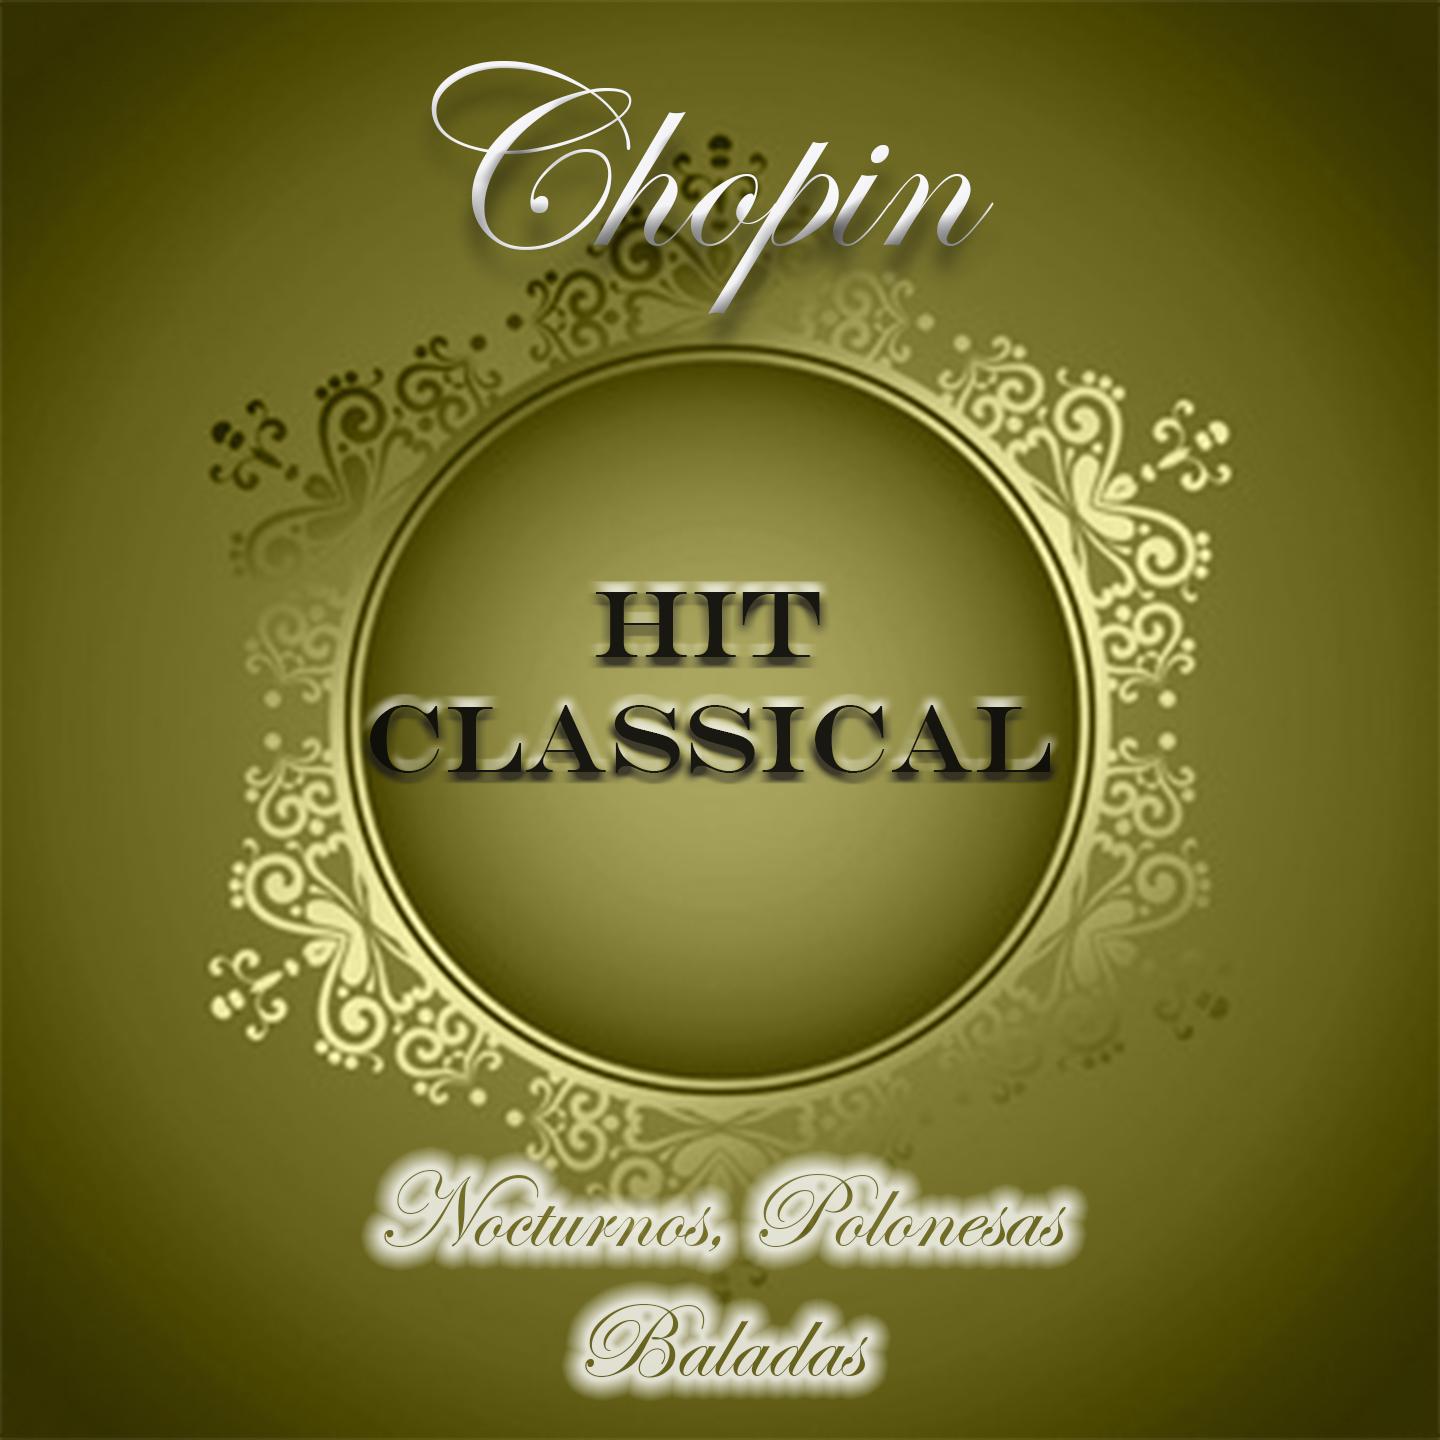 Hit Classical, Chopin, Nocturnos, Polonesas y Baladas